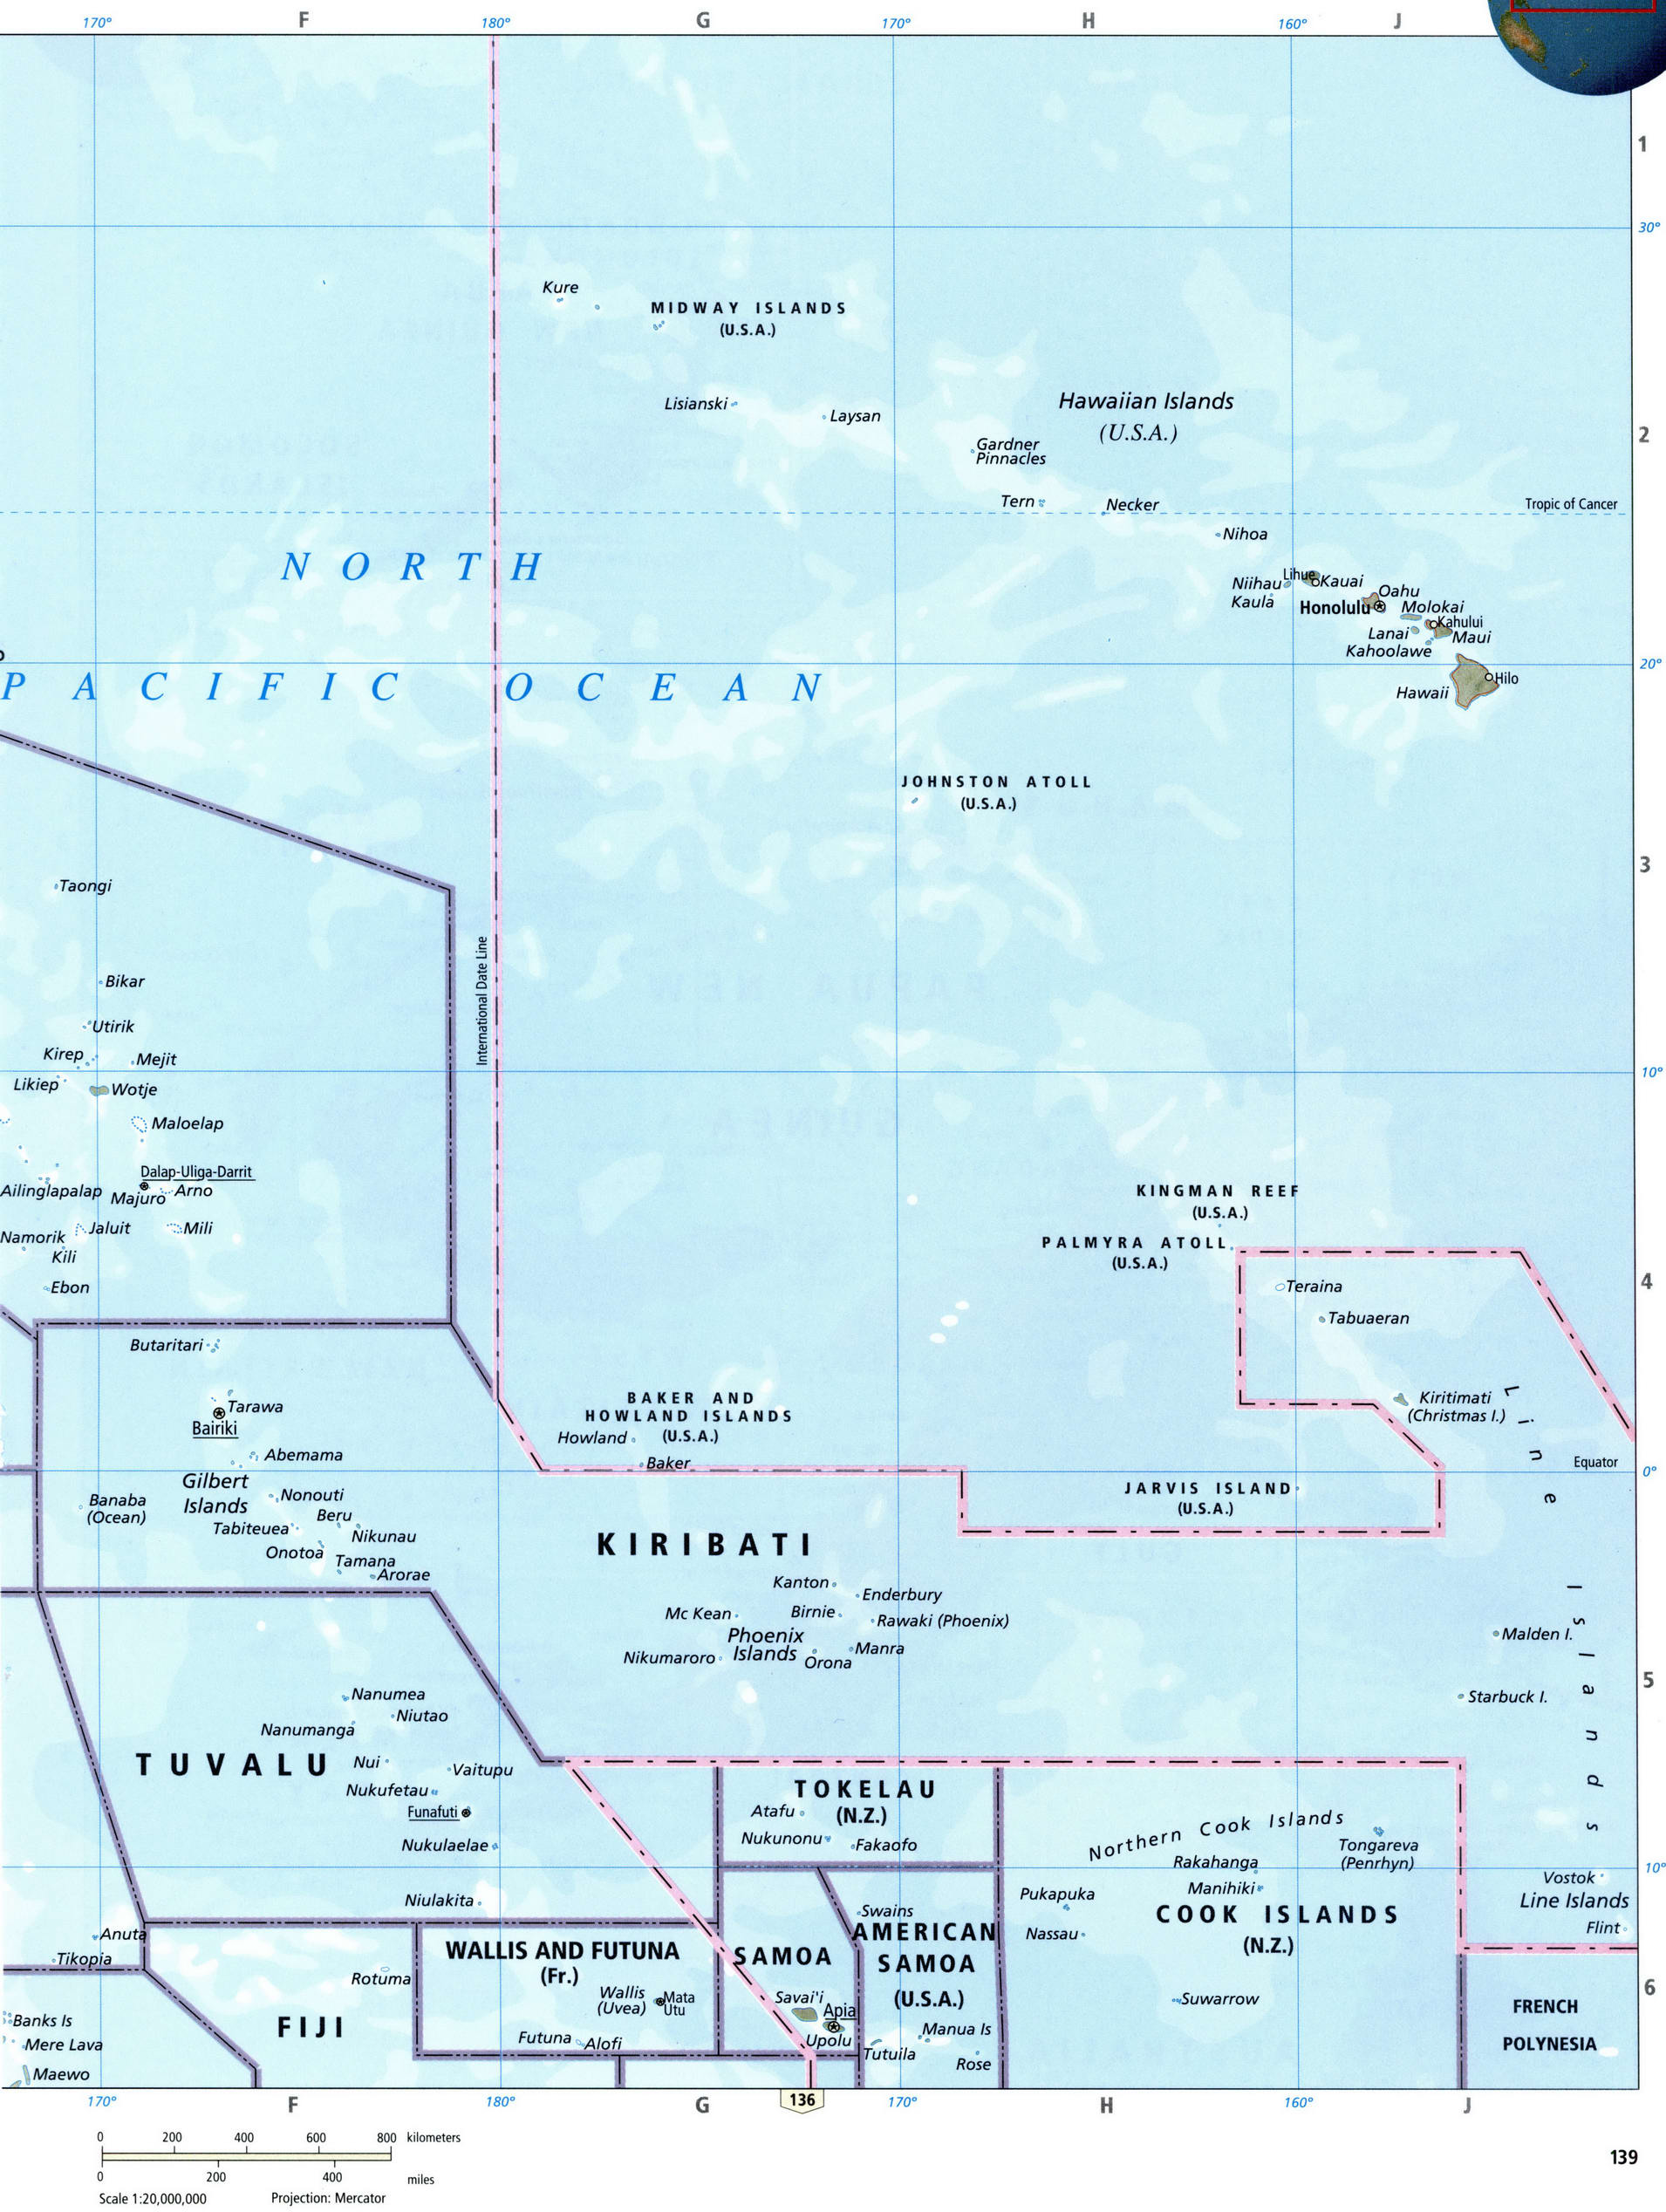 Карта островов экваториальной части Тихого океана